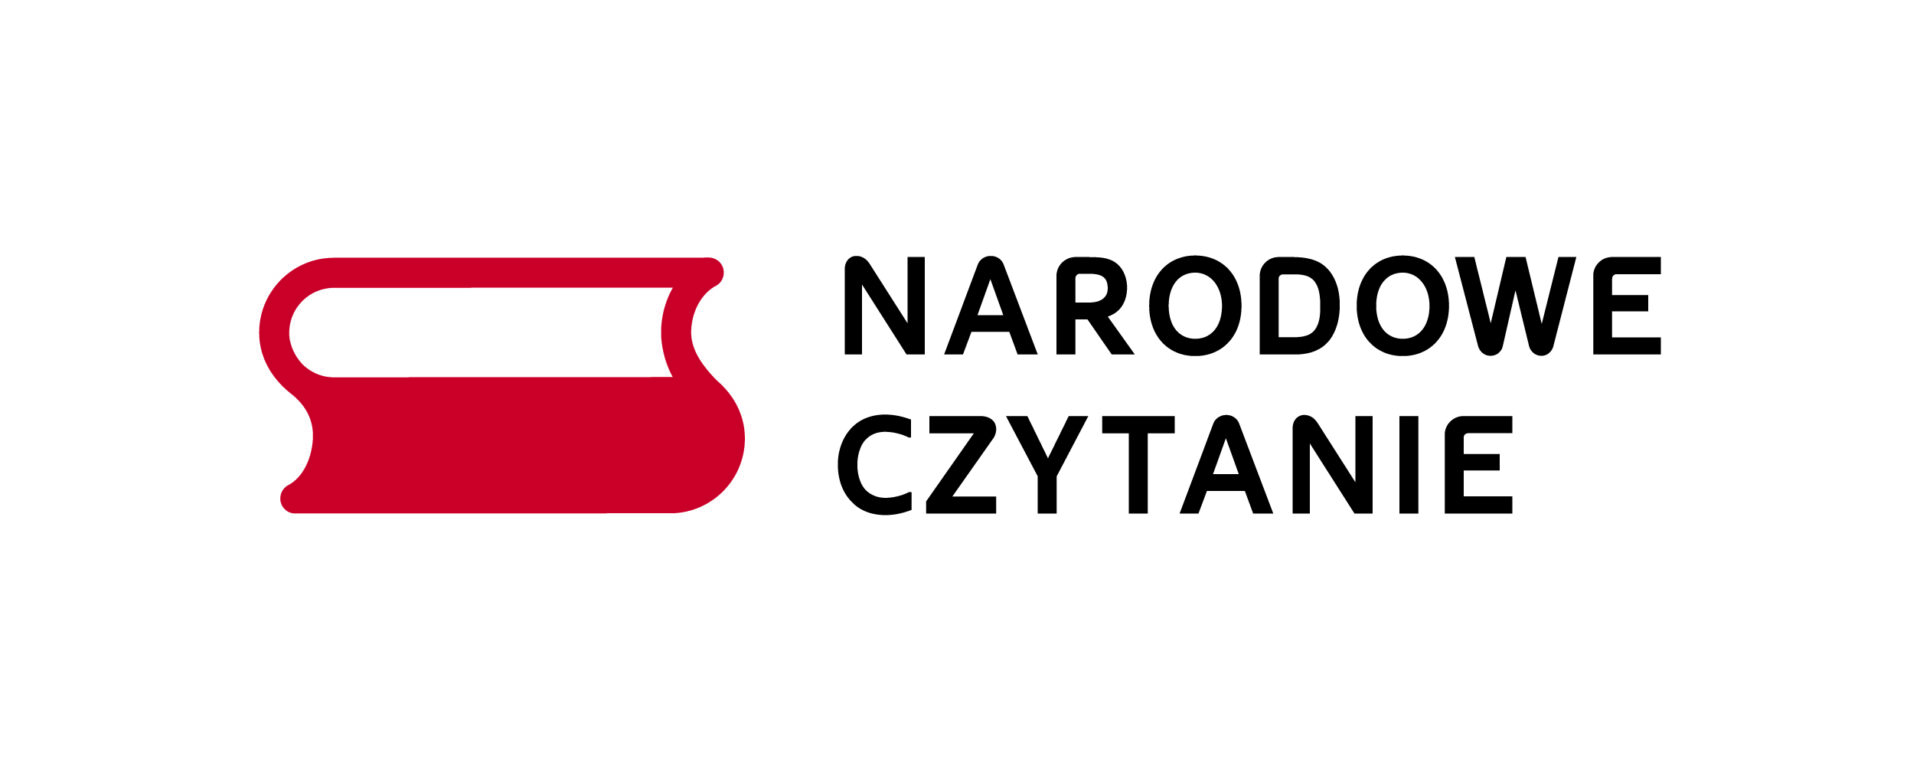 Napis Narodowe Czytanie i logo